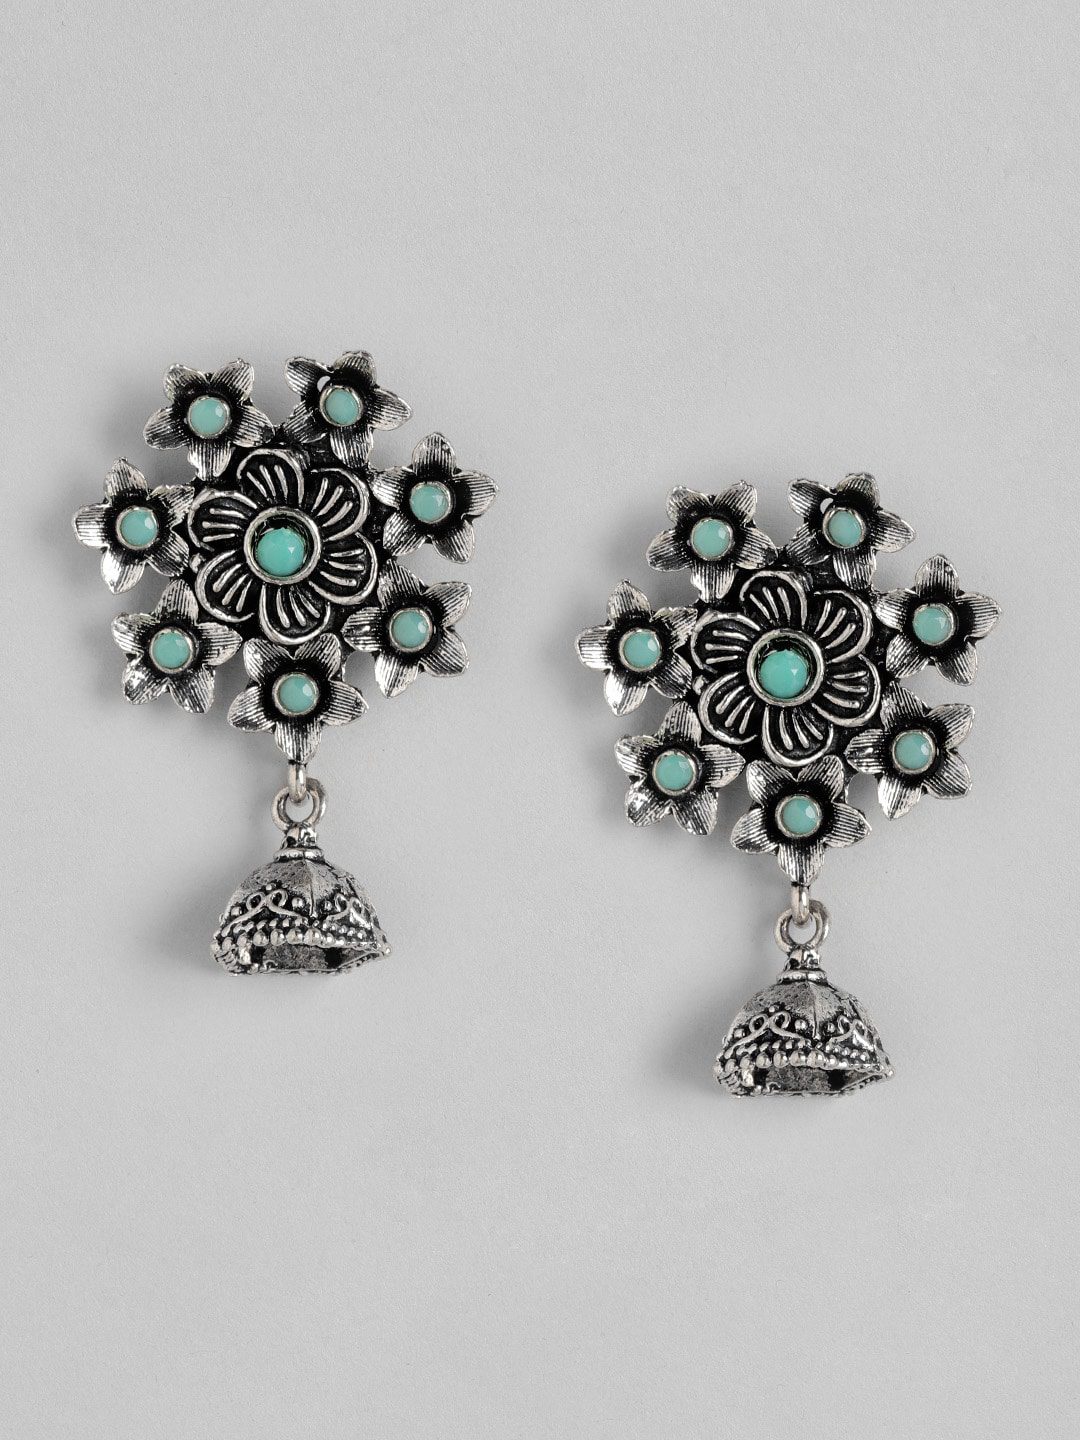 Boho turquoise silver tone earrings Jewellery Earrings Chandelier Earrings 